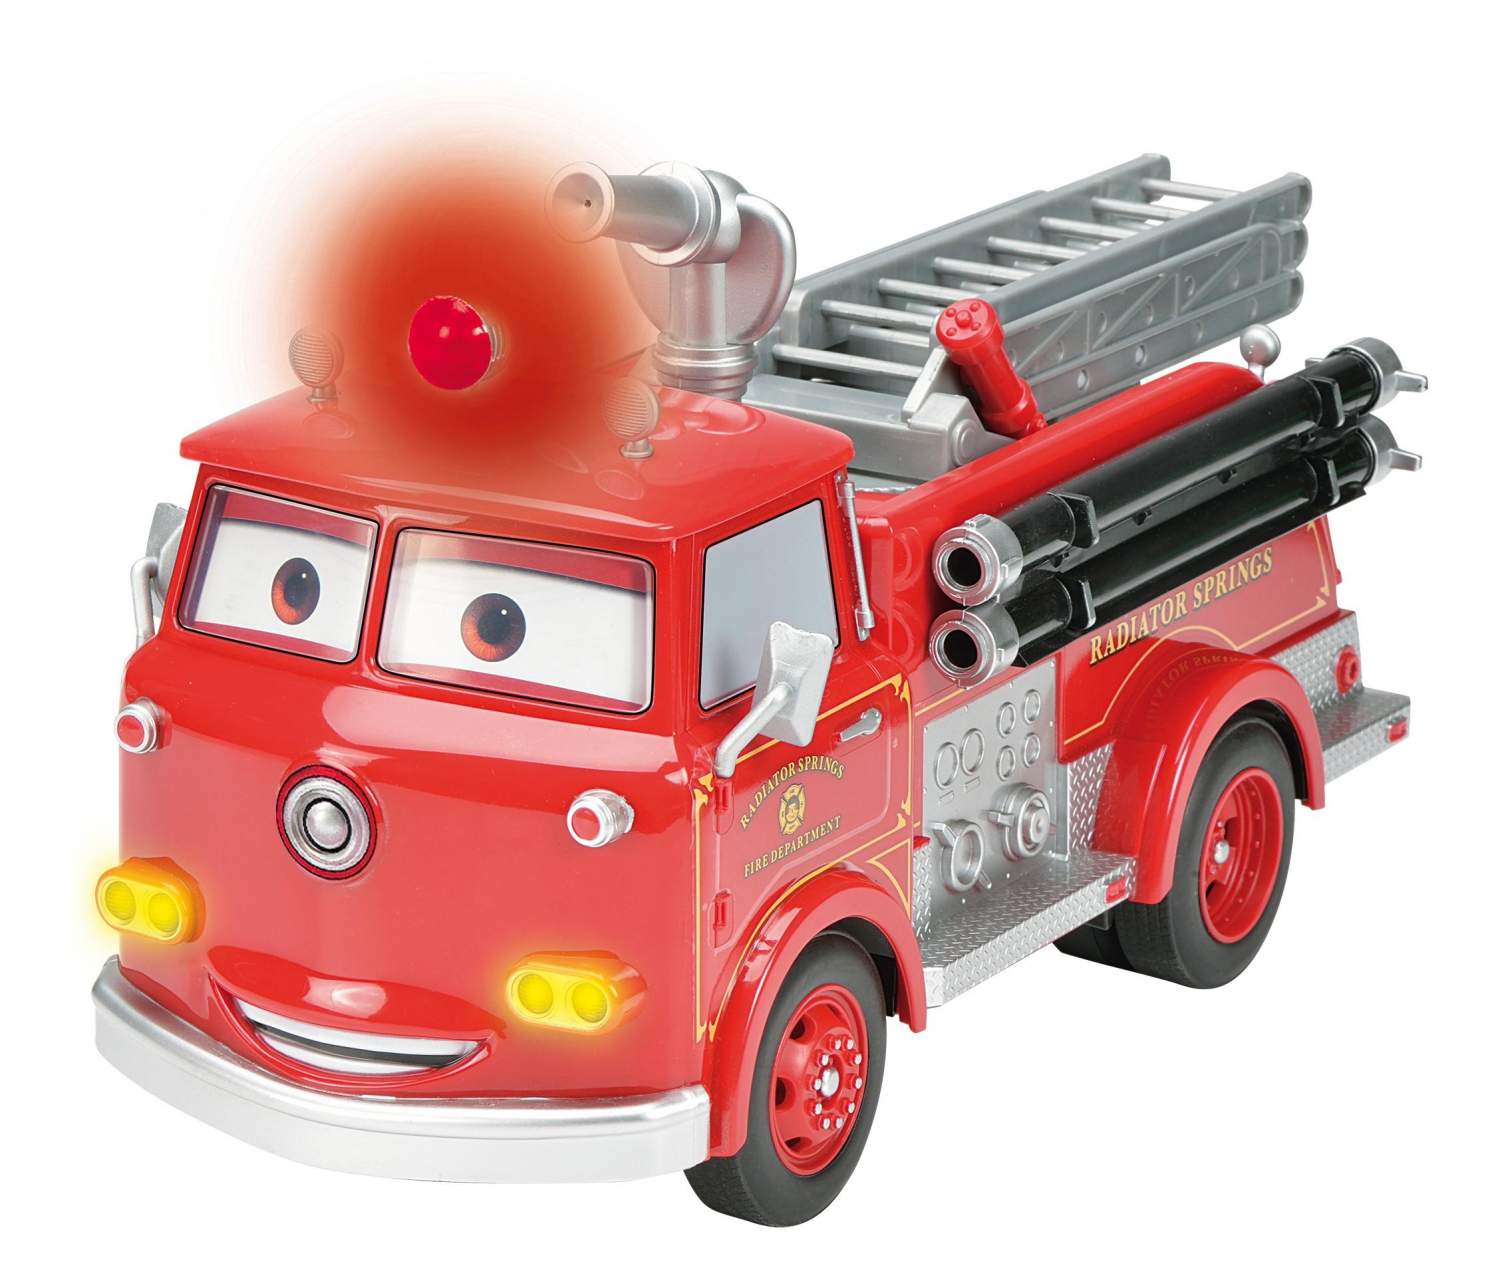 Маленькая пожарная машинка. Пожарная машина 5110dks. Грузовик Dickie Toys Тачки Мэтр (3089507) 1:16 29 см. Пожарная машина Red Toys. Dickie Toys пожарная машина Red.